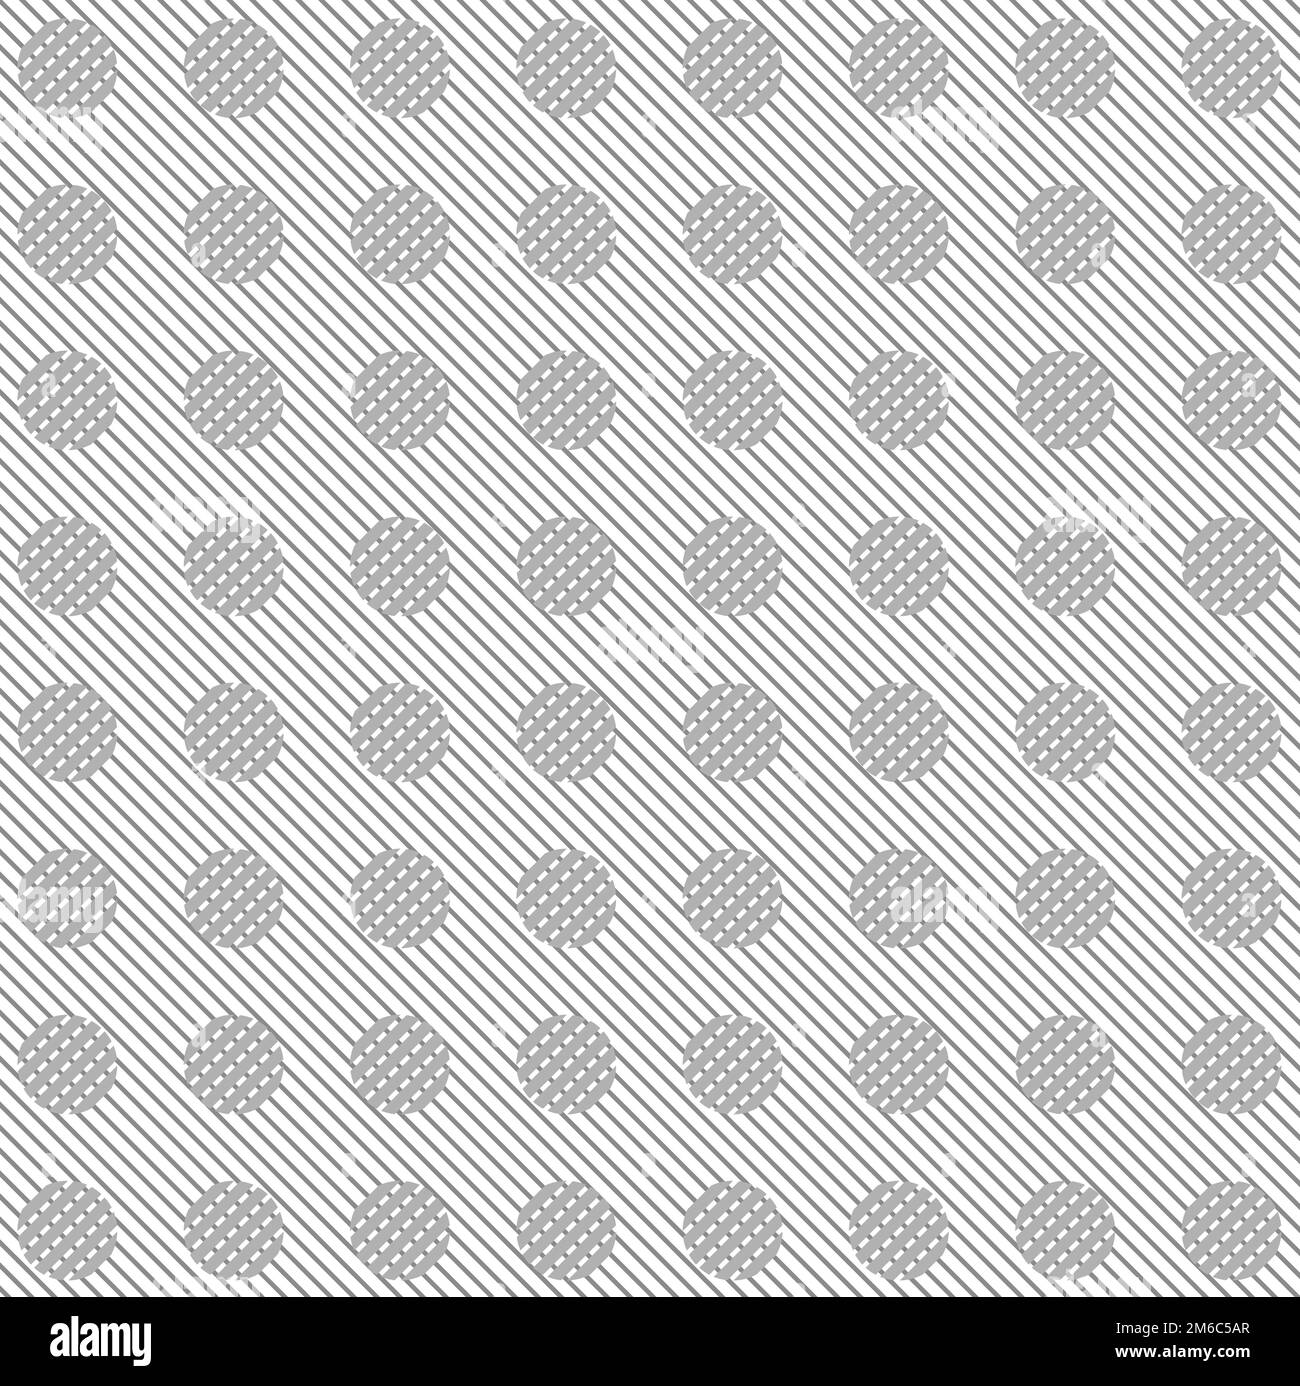 Motif de cercles et de rayures diagonales grises Banque D'Images